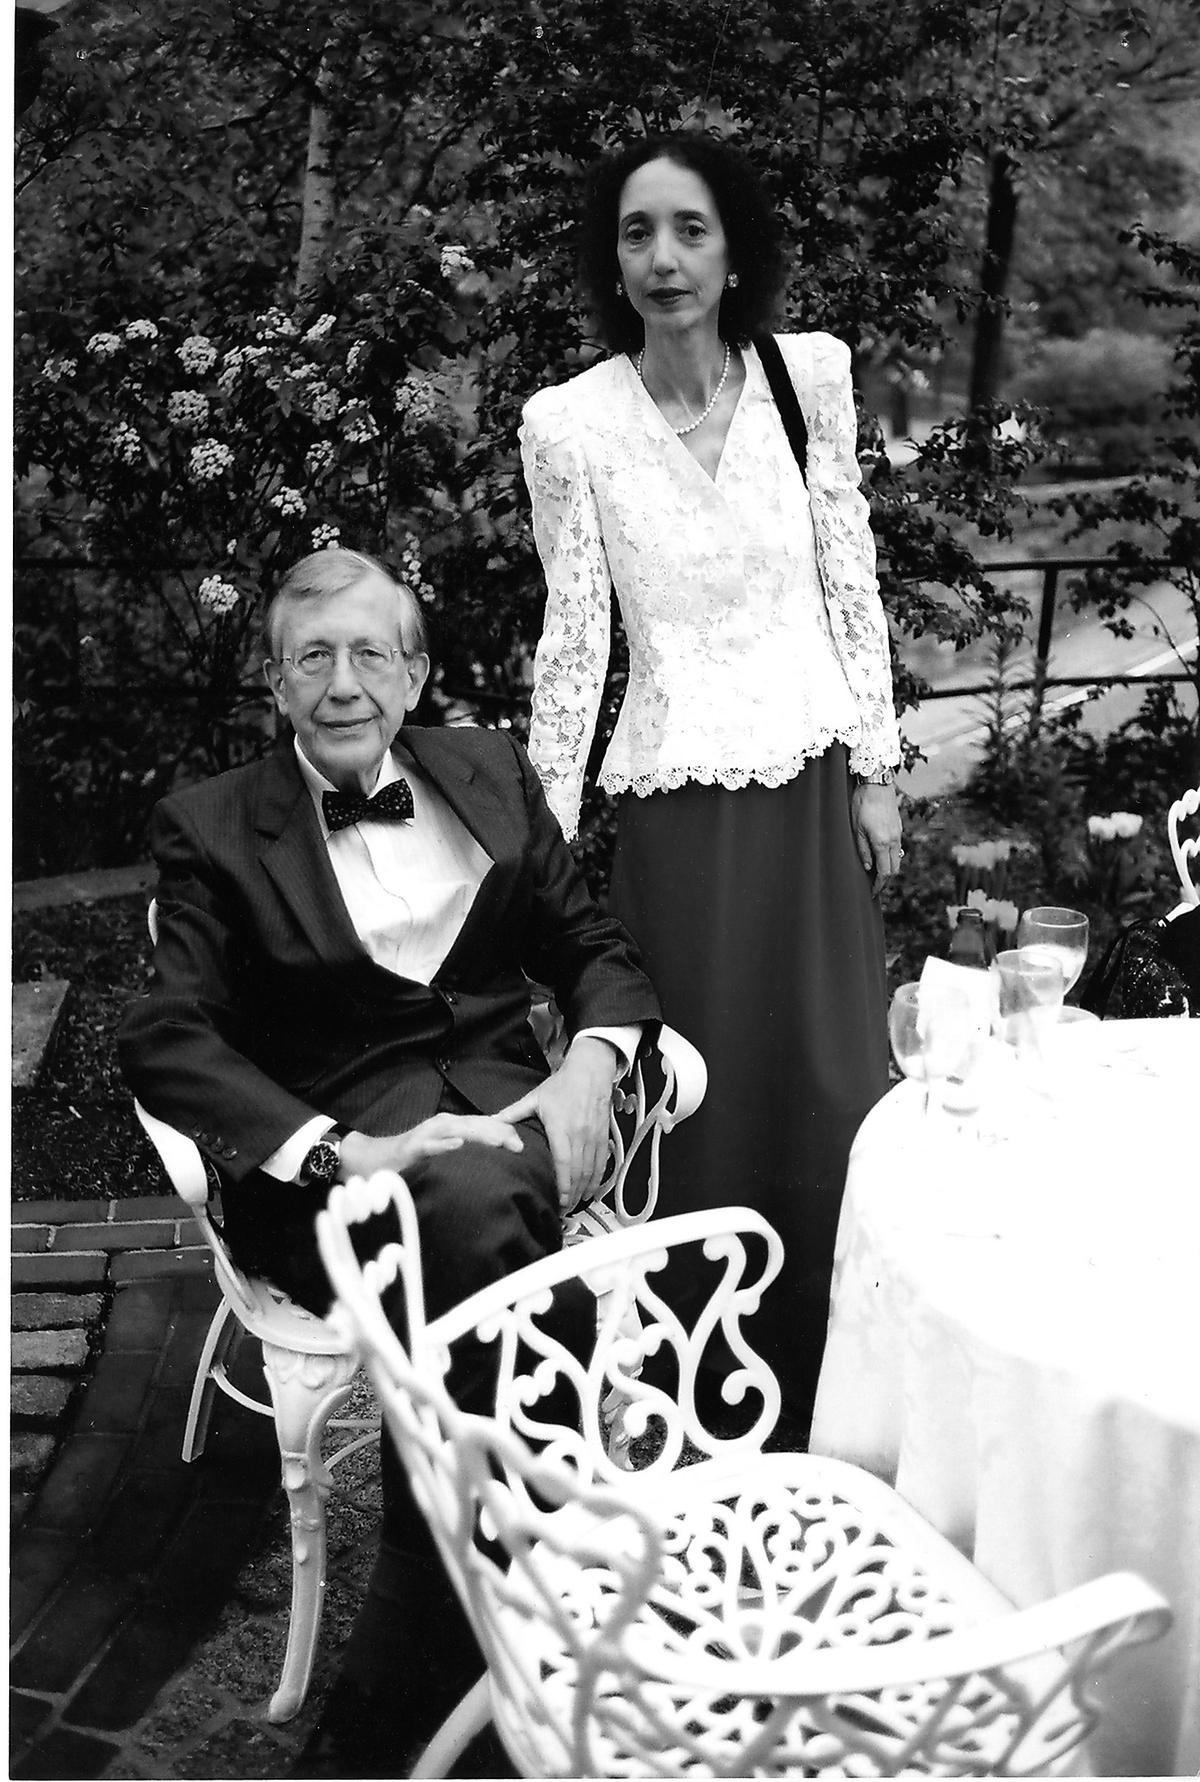 gifta i 47 år  Joyce Carol Oates med maken Raymond Smith. Nya romanen handlar om livet efter Raymonds hastiga död 2008. I dag är Oates omgift.